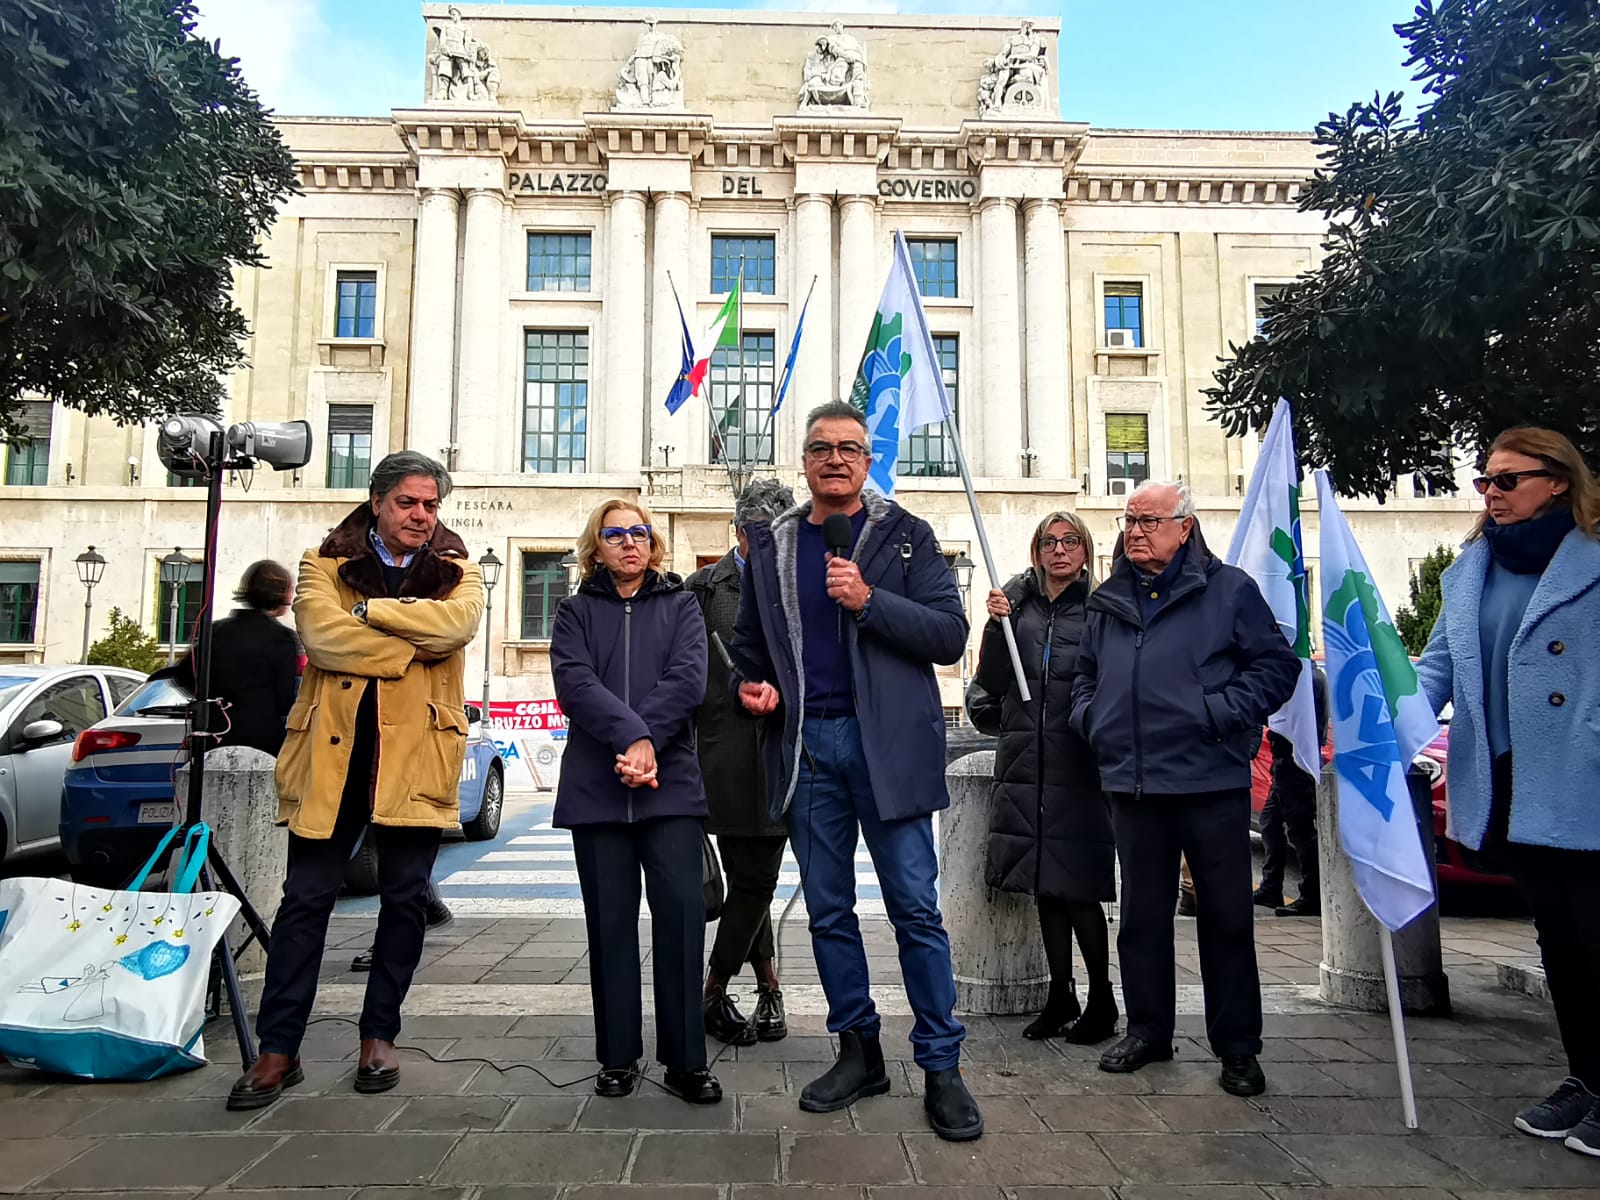 Sindacato dei Giornalisti abruzzesi. Presidio davanti alla Prefettura di Pescara:” Difendiamo i diritti dei cittadini ad un’informazione completa e corretta”